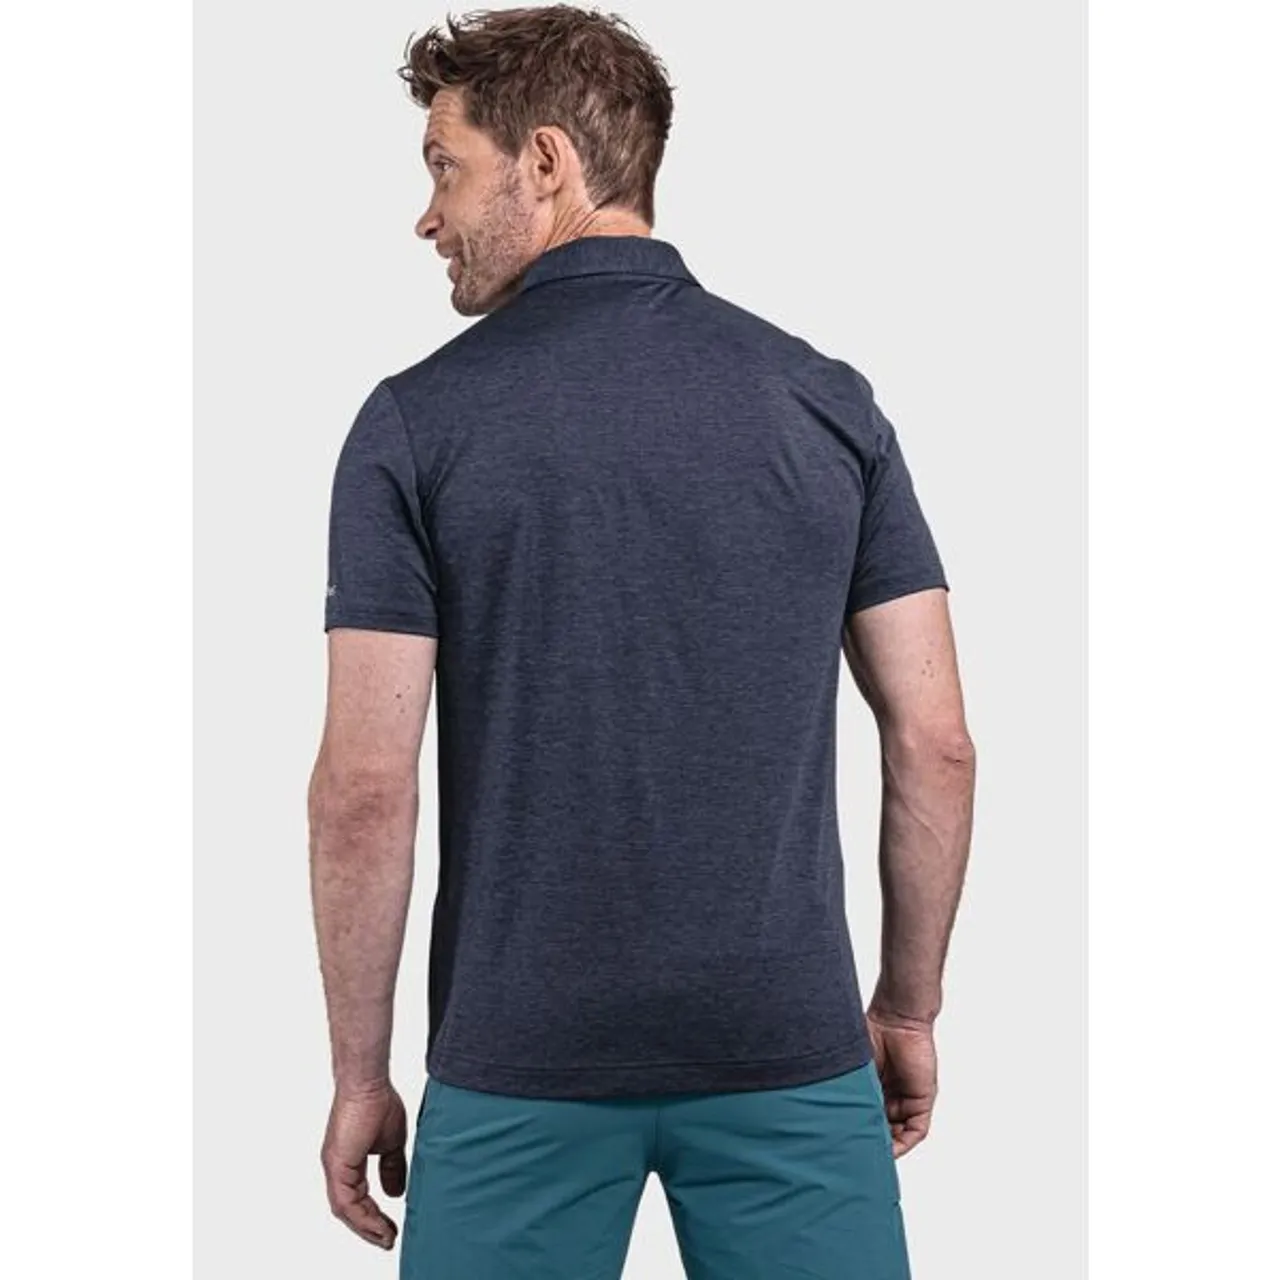 Poloshirt SCHÖFFEL "CIRC Polo Shirt Tauron M" Gr. 56, blau (8820, blau) Herren Shirts Kurzarm